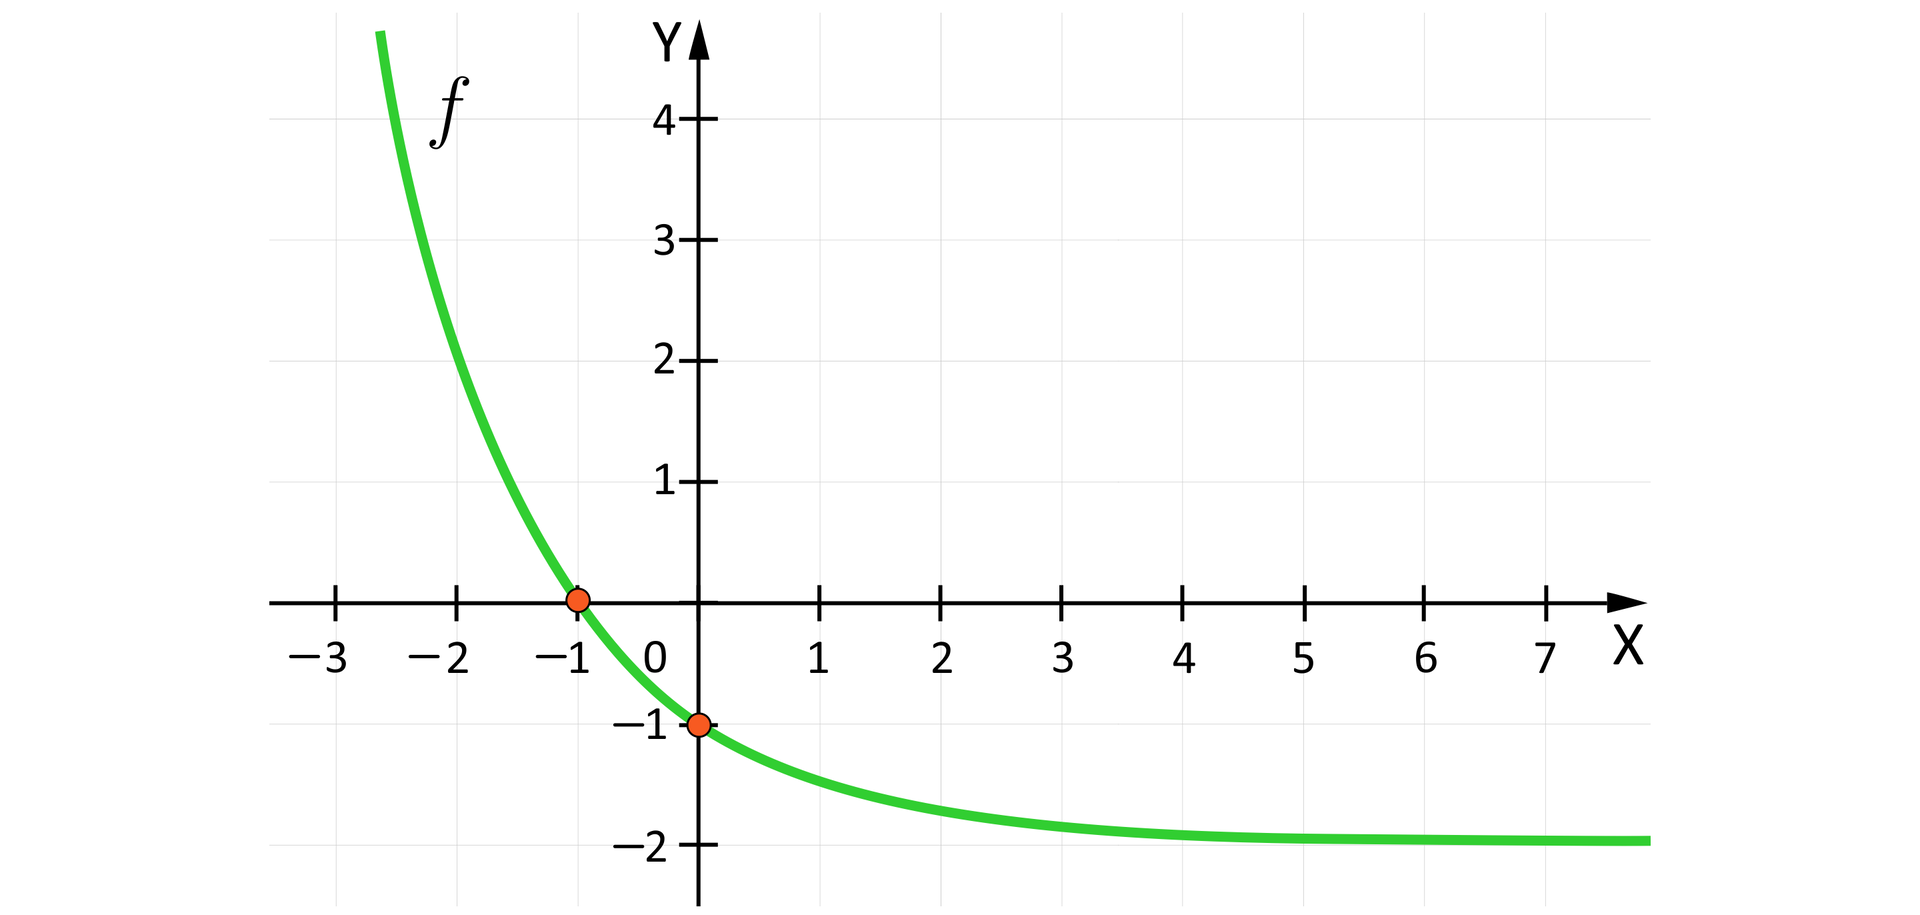 Rysunek przedstawia układ współrzędnych z poziomą osią X od minus trzech do siedmiu oraz z pionową osią  Y od minus dwóch do czterech. Na płaszczyźnie narysowany jest wykres funkcji  fx=12x-2. Zaznoczno punkty, w których Wykres funkcji f przecina osie. Są to punkty o współrzędnych:  -1;0, oraz  0;-1.